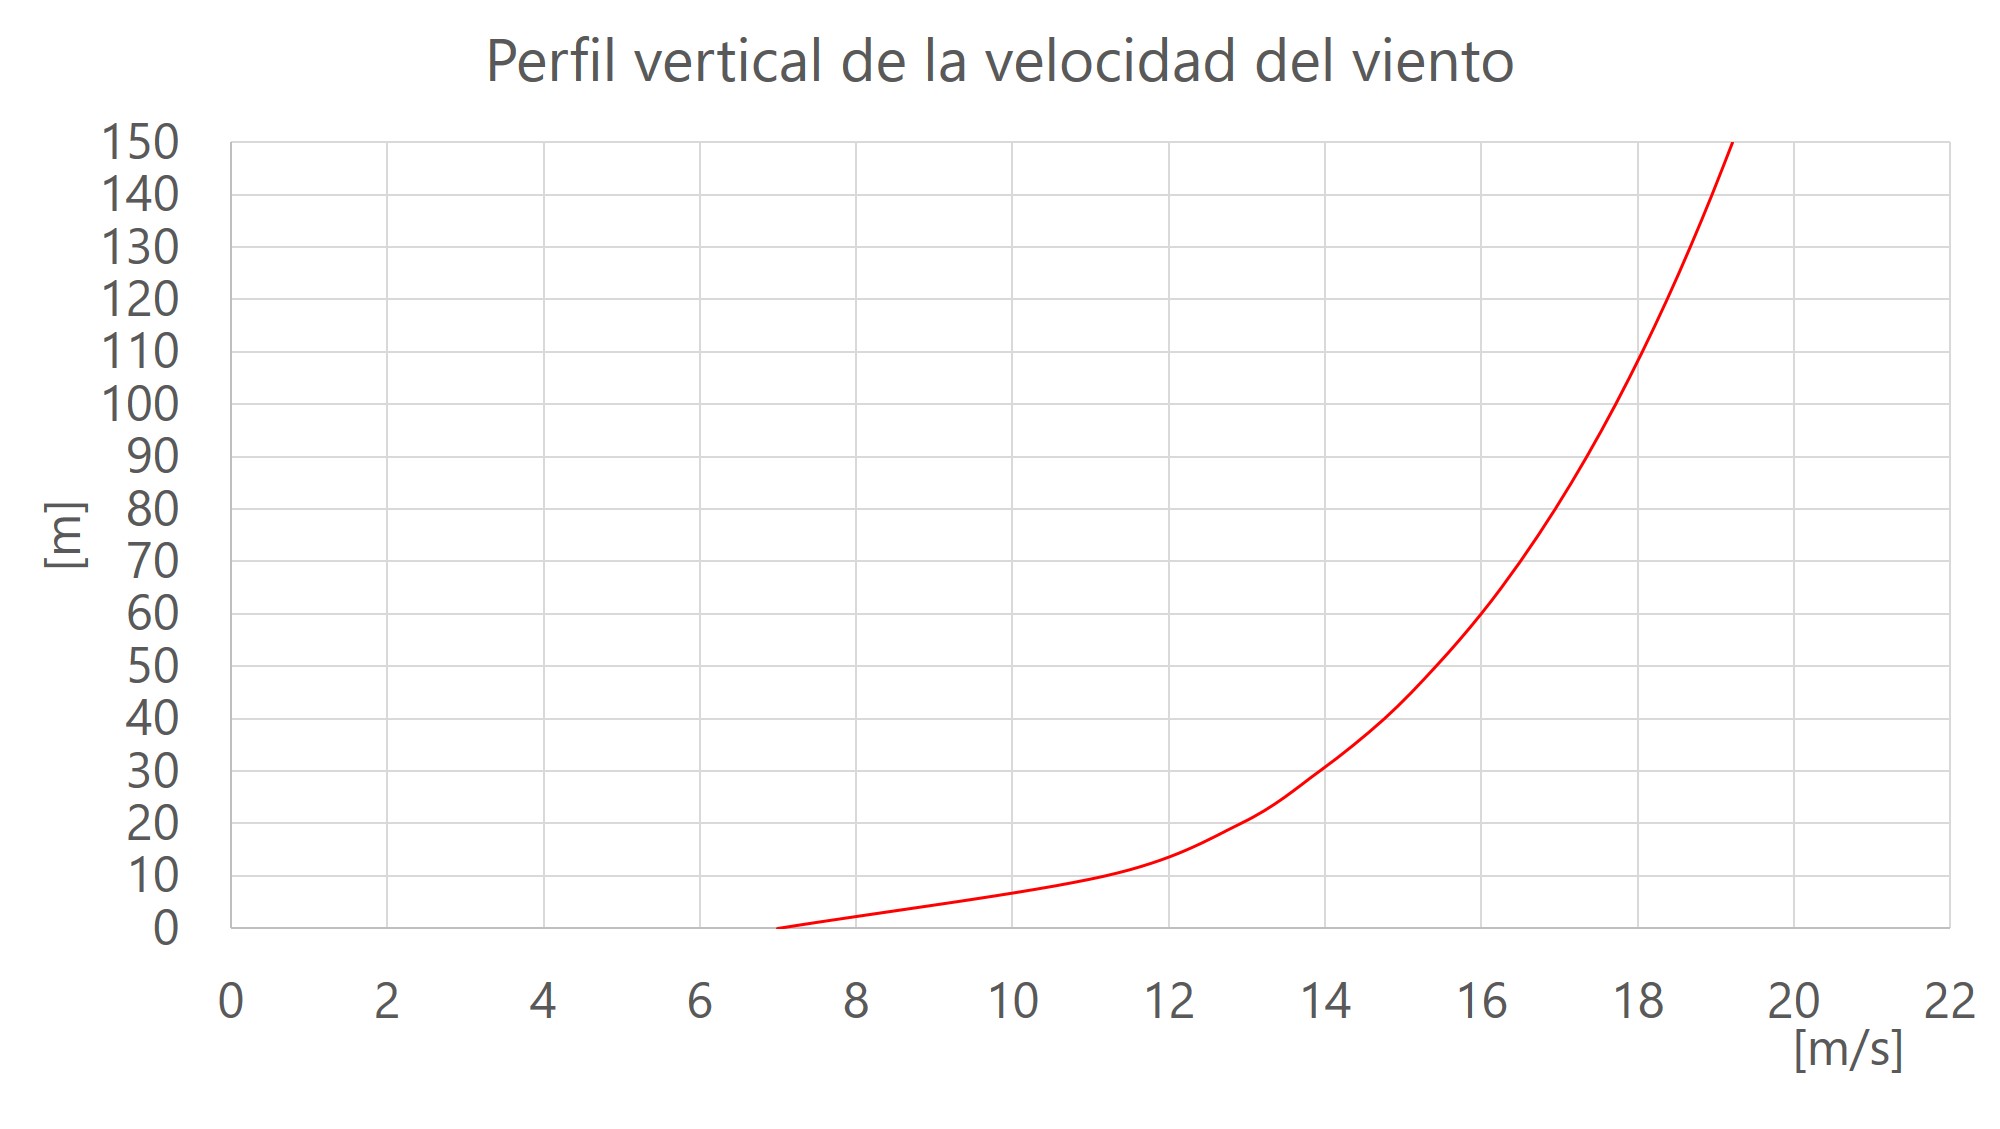 Perfil vertical  de la velocidad del viento. Modelo logarítmico.